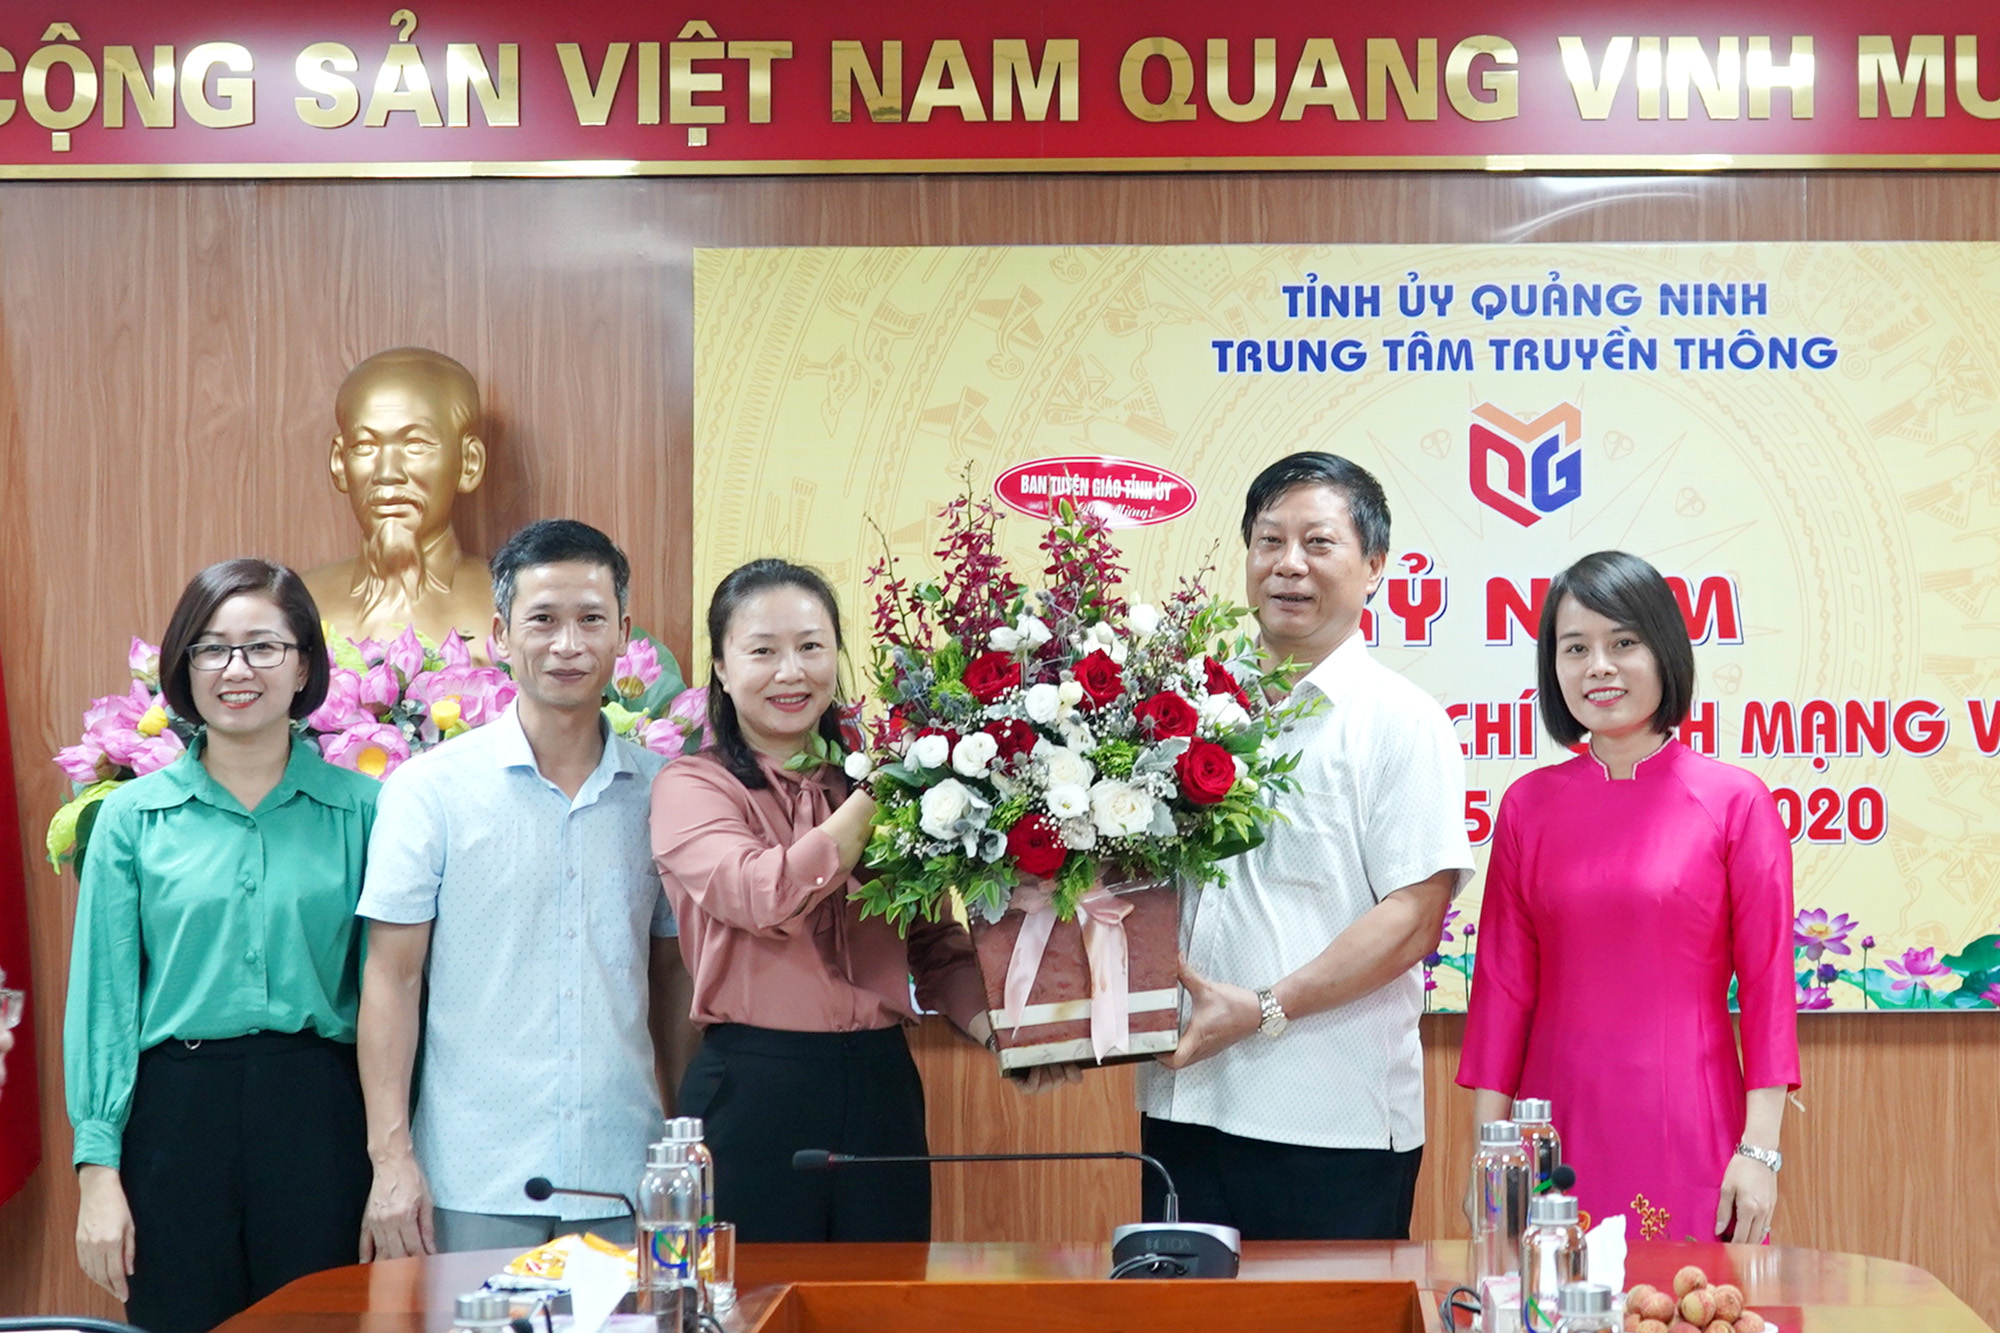 Đồng chí Vi Ngọc Bích, Trưởng Ban Tuyên giáo Tỉnh ủy tặng hoa chúc mừng Trung tâm Truyền thông tỉnh nhân ngày Báo chí cách mạng Việt Nam.